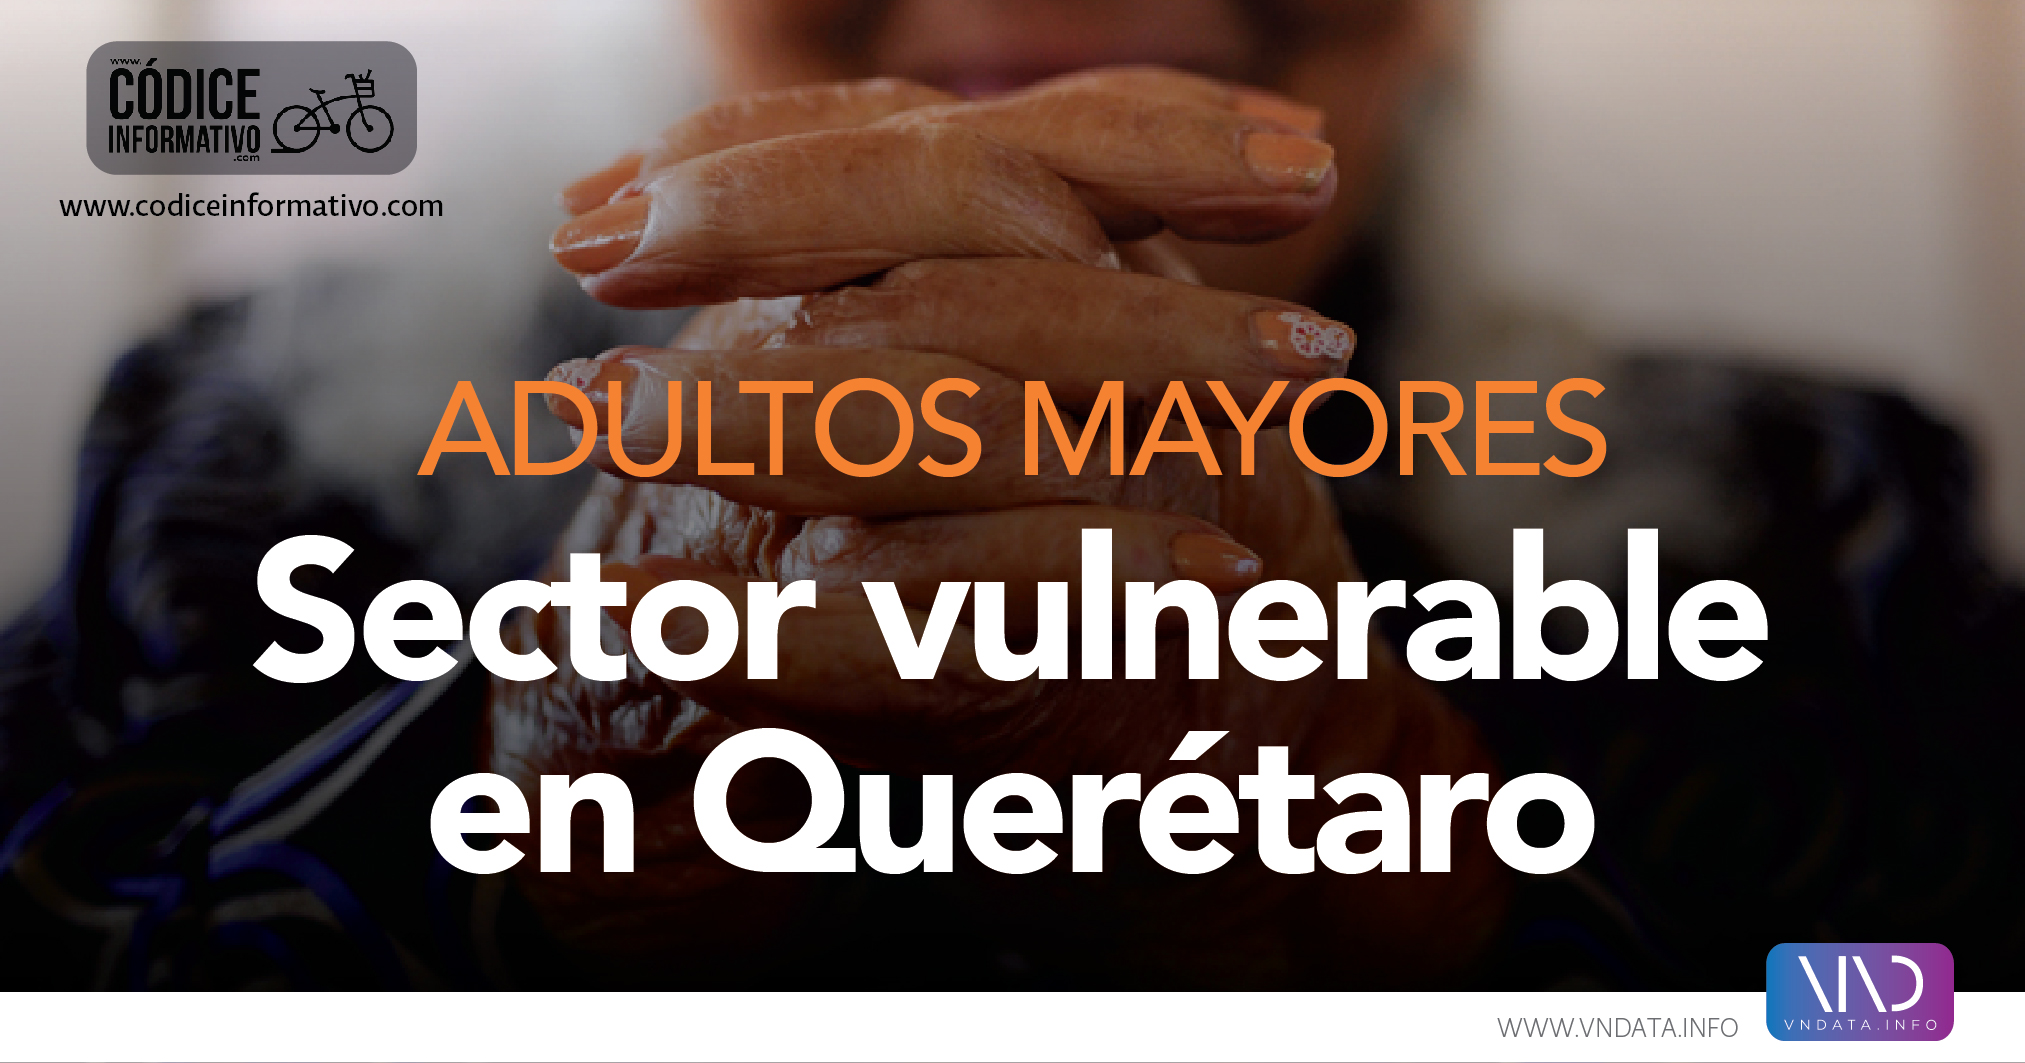  Adultos mayores, sector vulnerable en Querétaro